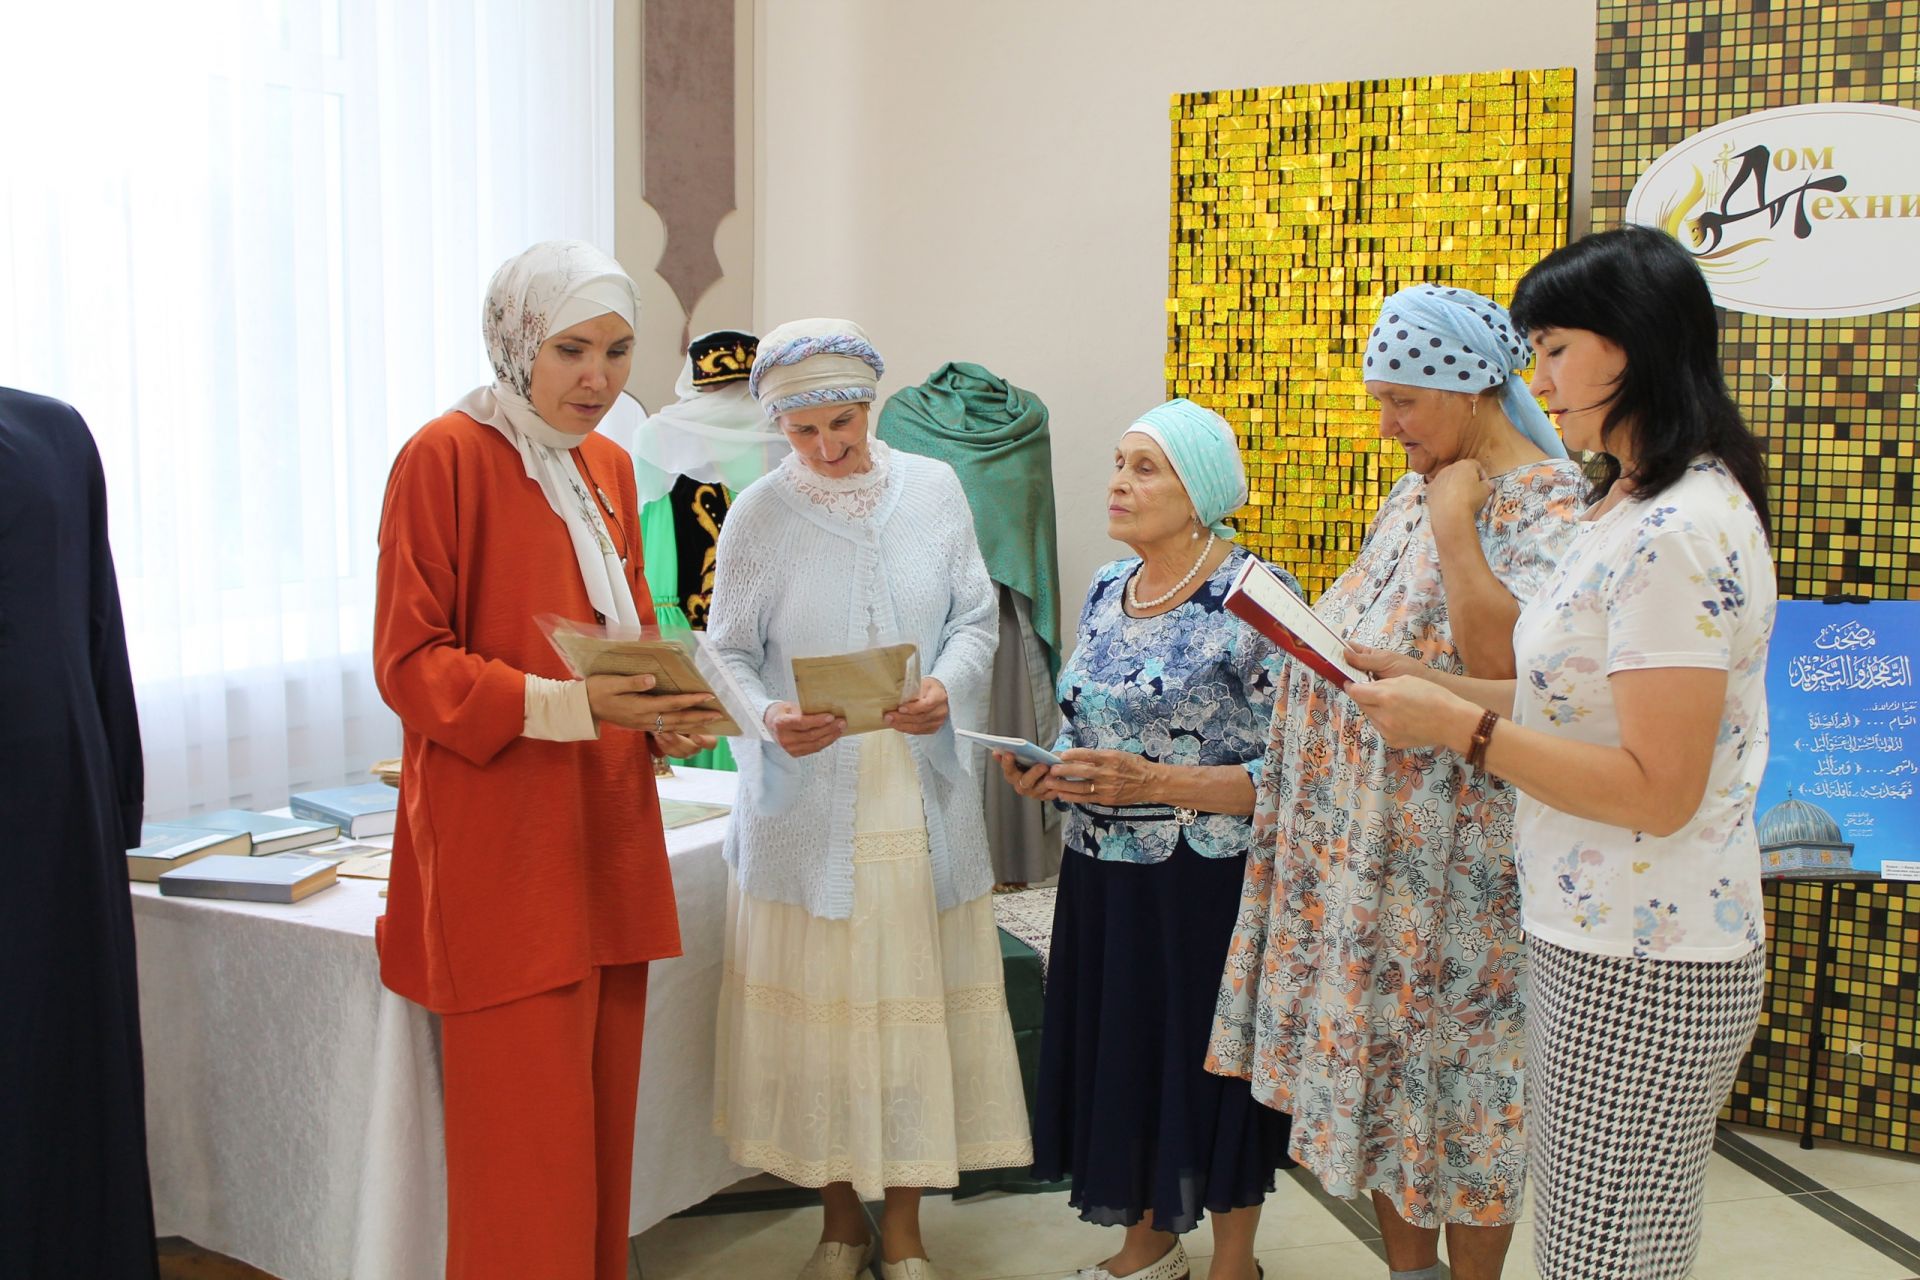 В Доме техники появилась экспозиция к 1100-летию принятия Ислама Волжской Булгарией